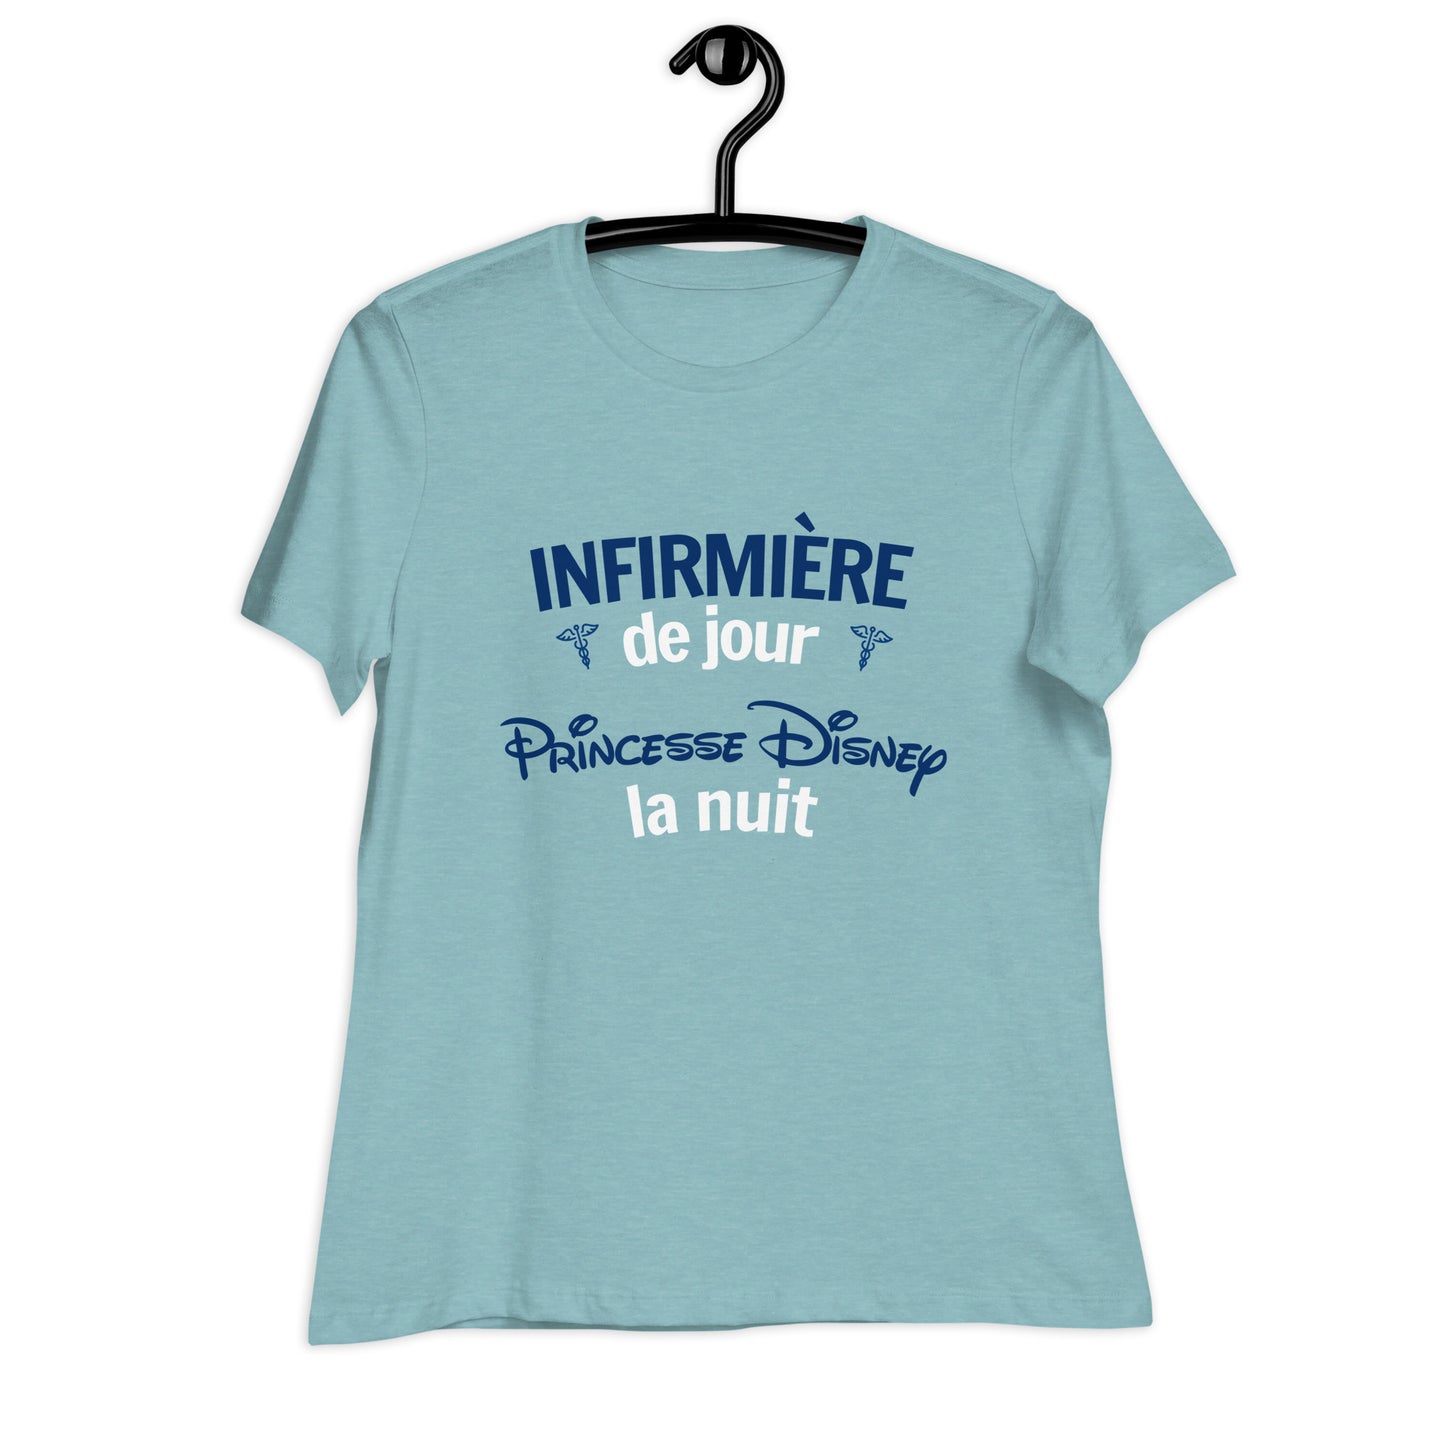 T-shirt : Infirmière le jour, Princess Disney la nuit